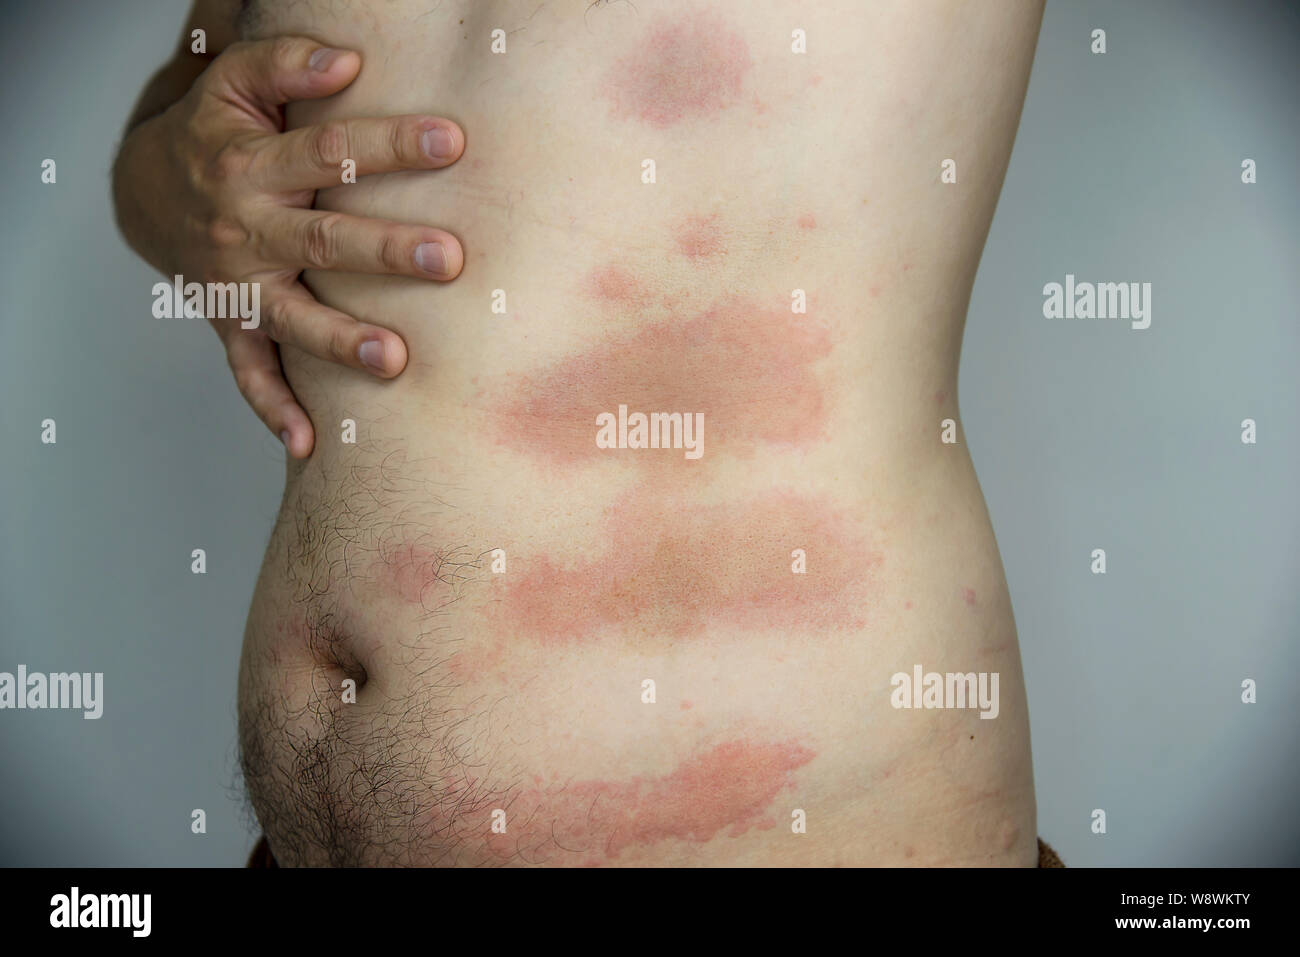 Allergia pelle immagini e fotografie stock ad alta risoluzione - Alamy